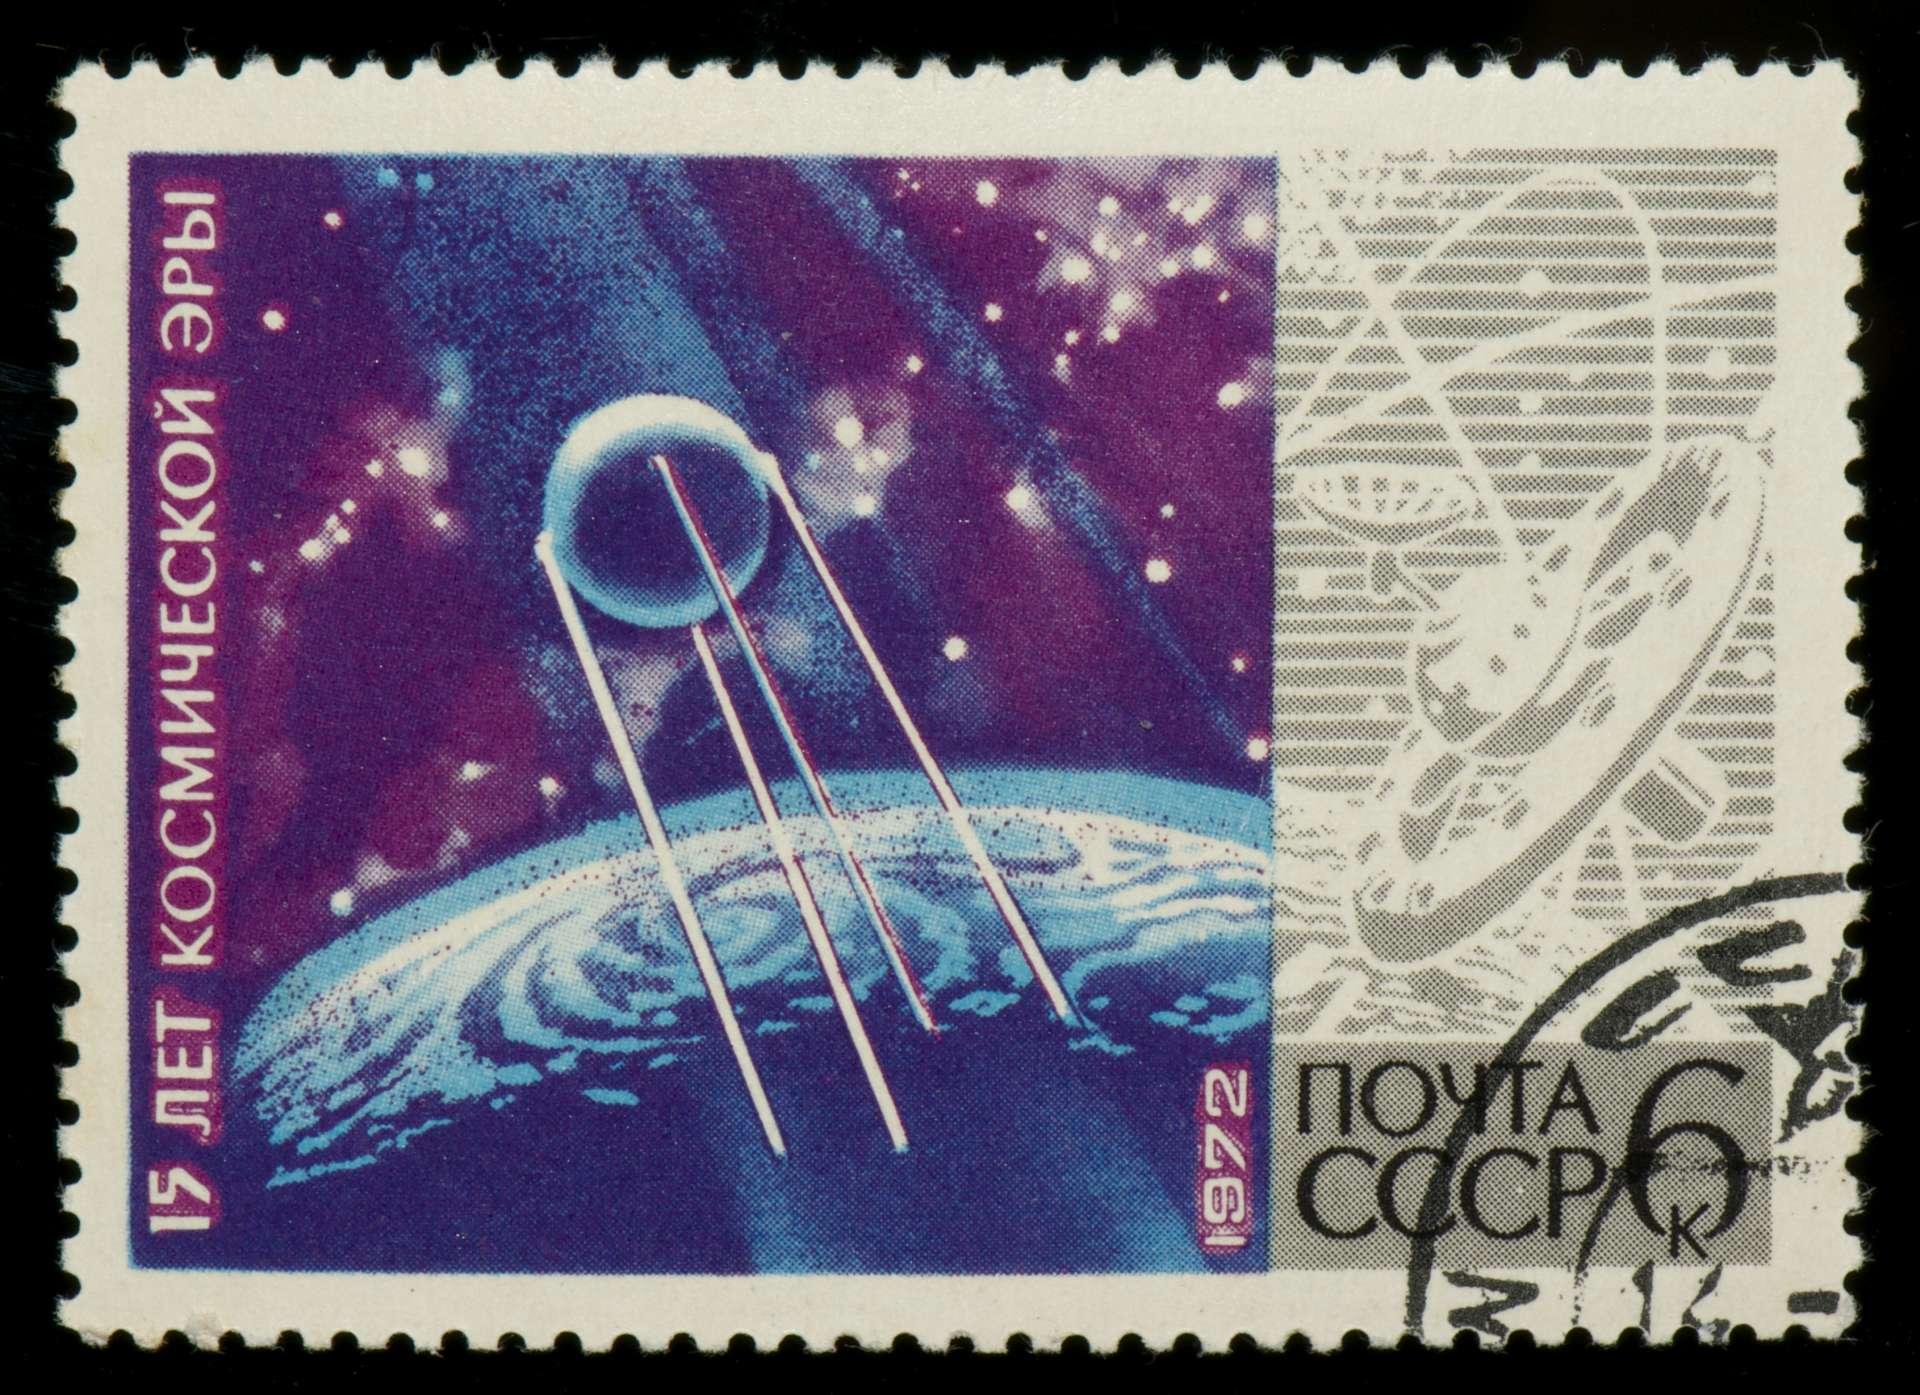 Sowjetische Briefmarke mit Planeten, Raum und Sputnik